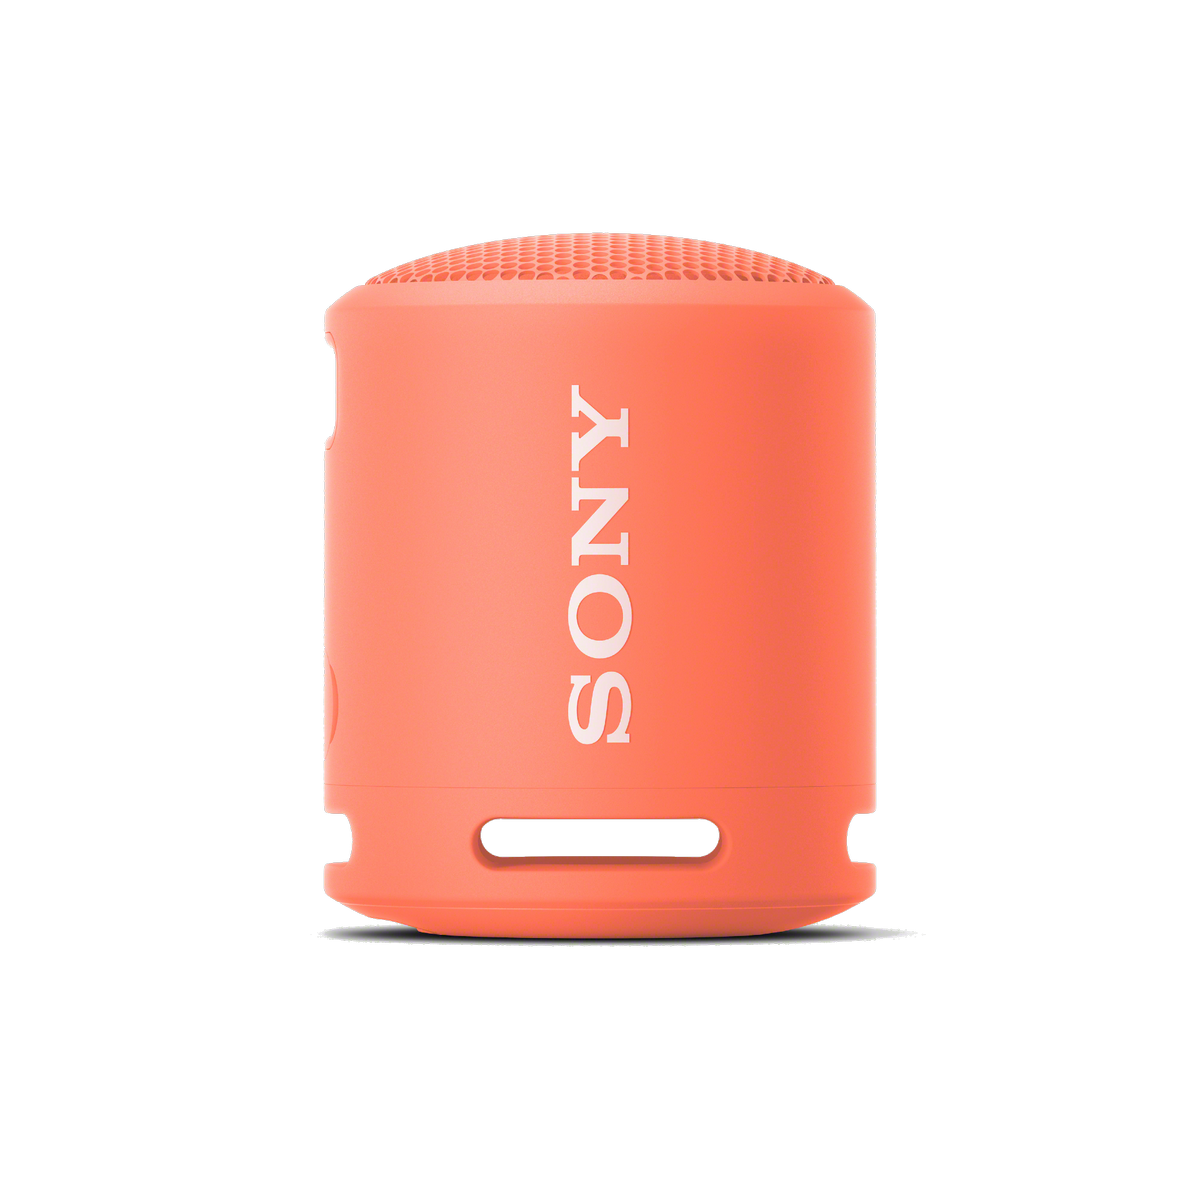 Altavoz Sony Srsxb13 rosa 5w batería 16h bluetooth compacto duradero y potente con extra bass resistente agua autonomía coral srsxb13p 16 horas srsxb13p.ce7 ip67 xb13p 5